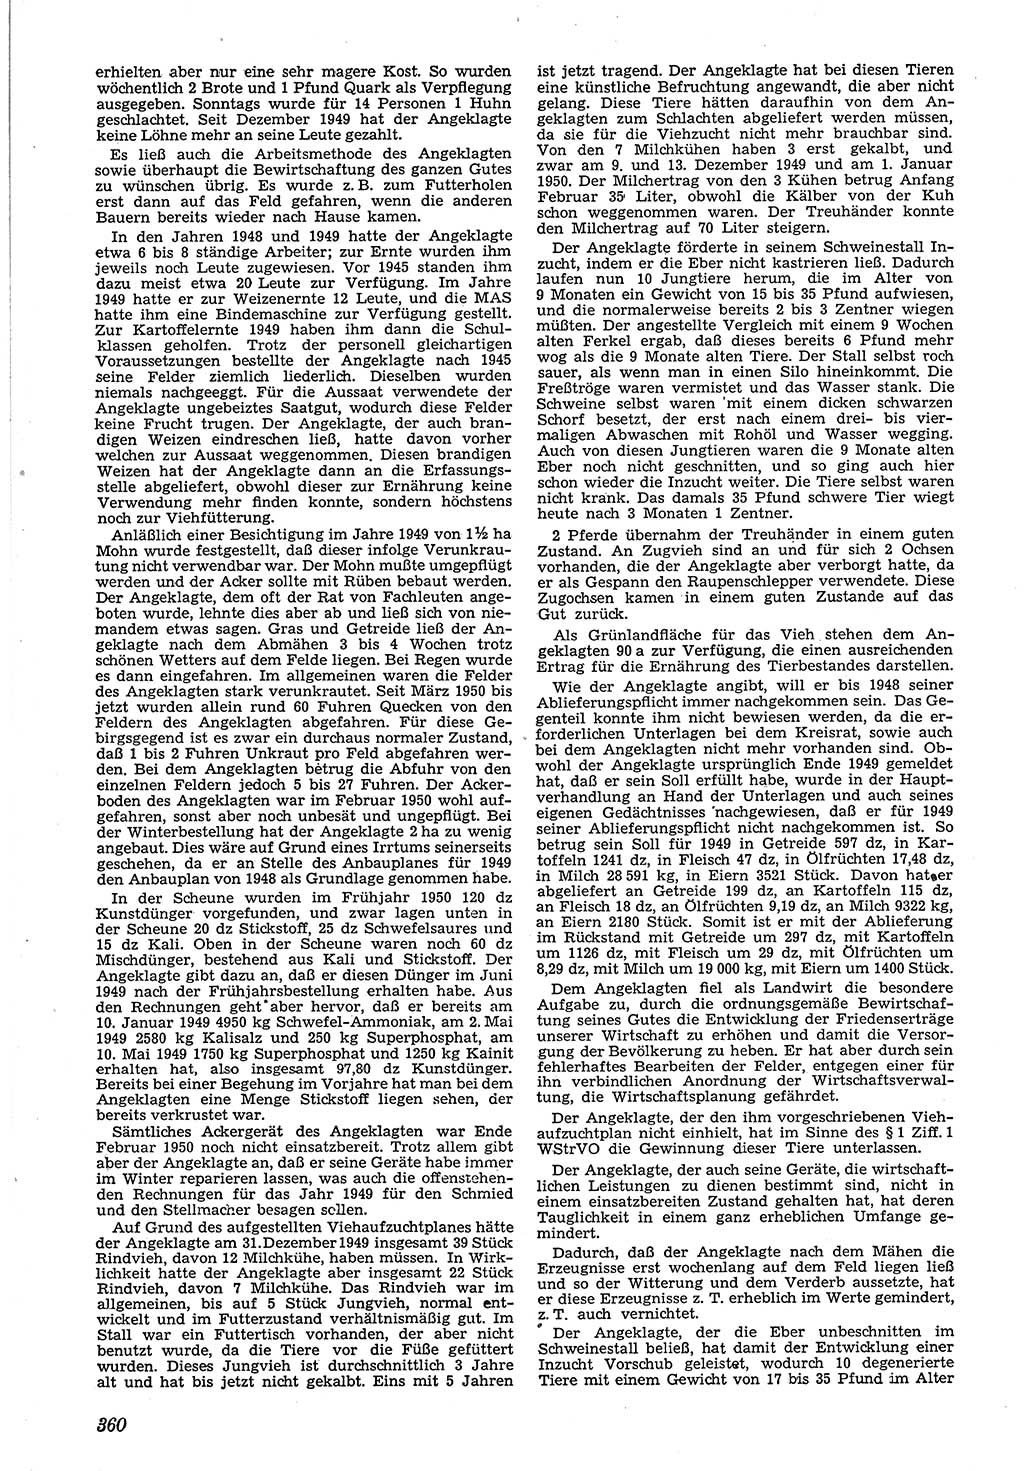 Neue Justiz (NJ), Zeitschrift für Recht und Rechtswissenschaft [Deutsche Demokratische Republik (DDR)], 4. Jahrgang 1950, Seite 360 (NJ DDR 1950, S. 360)